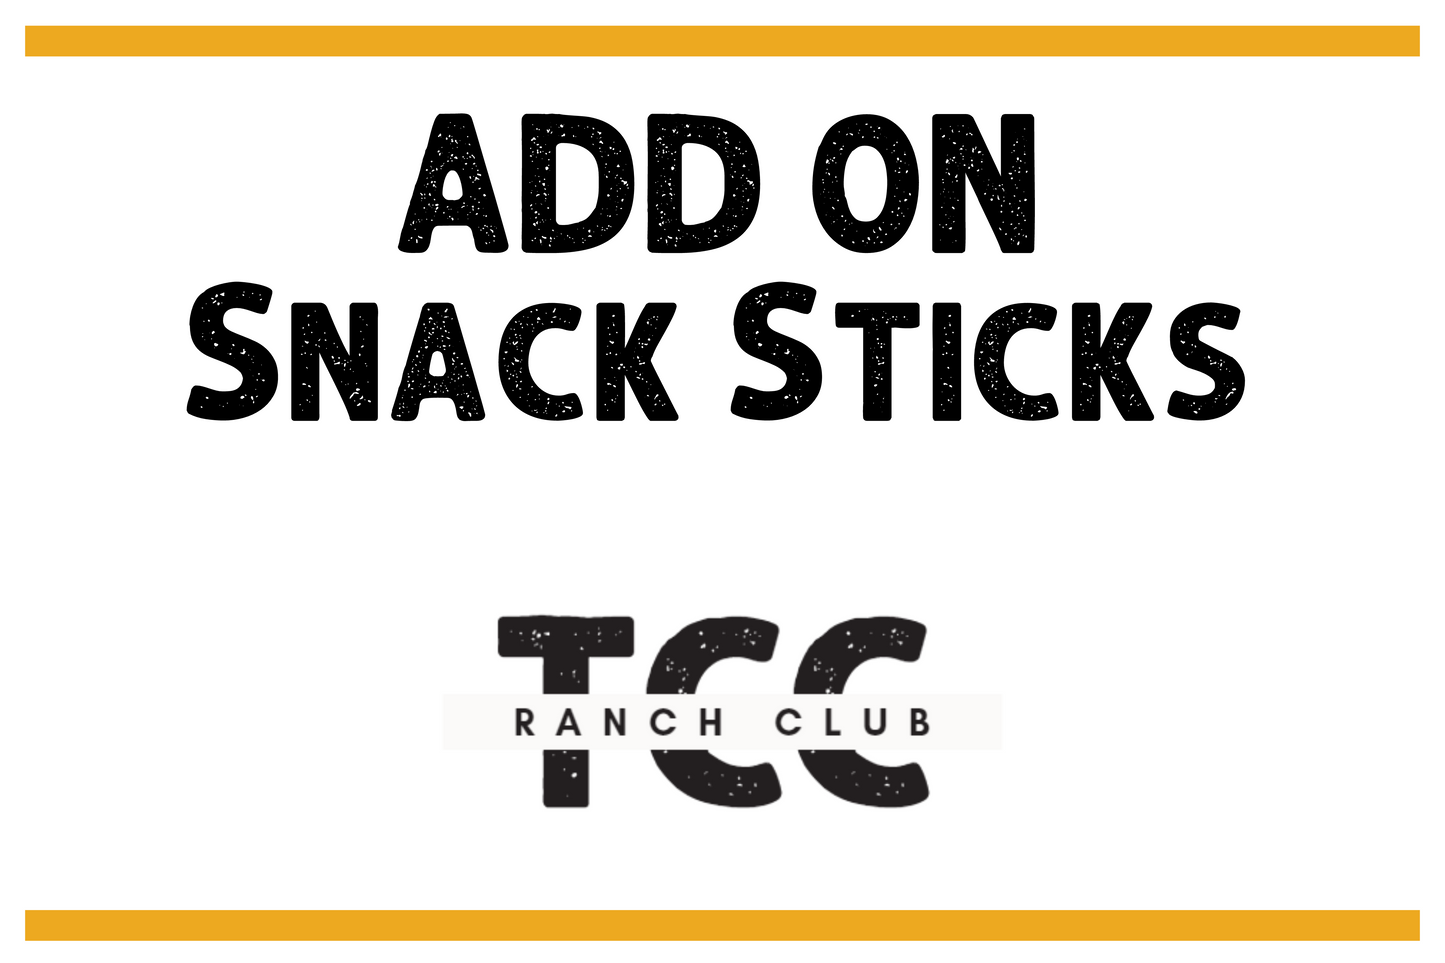 Ranch Club Add On - Snack Sticks